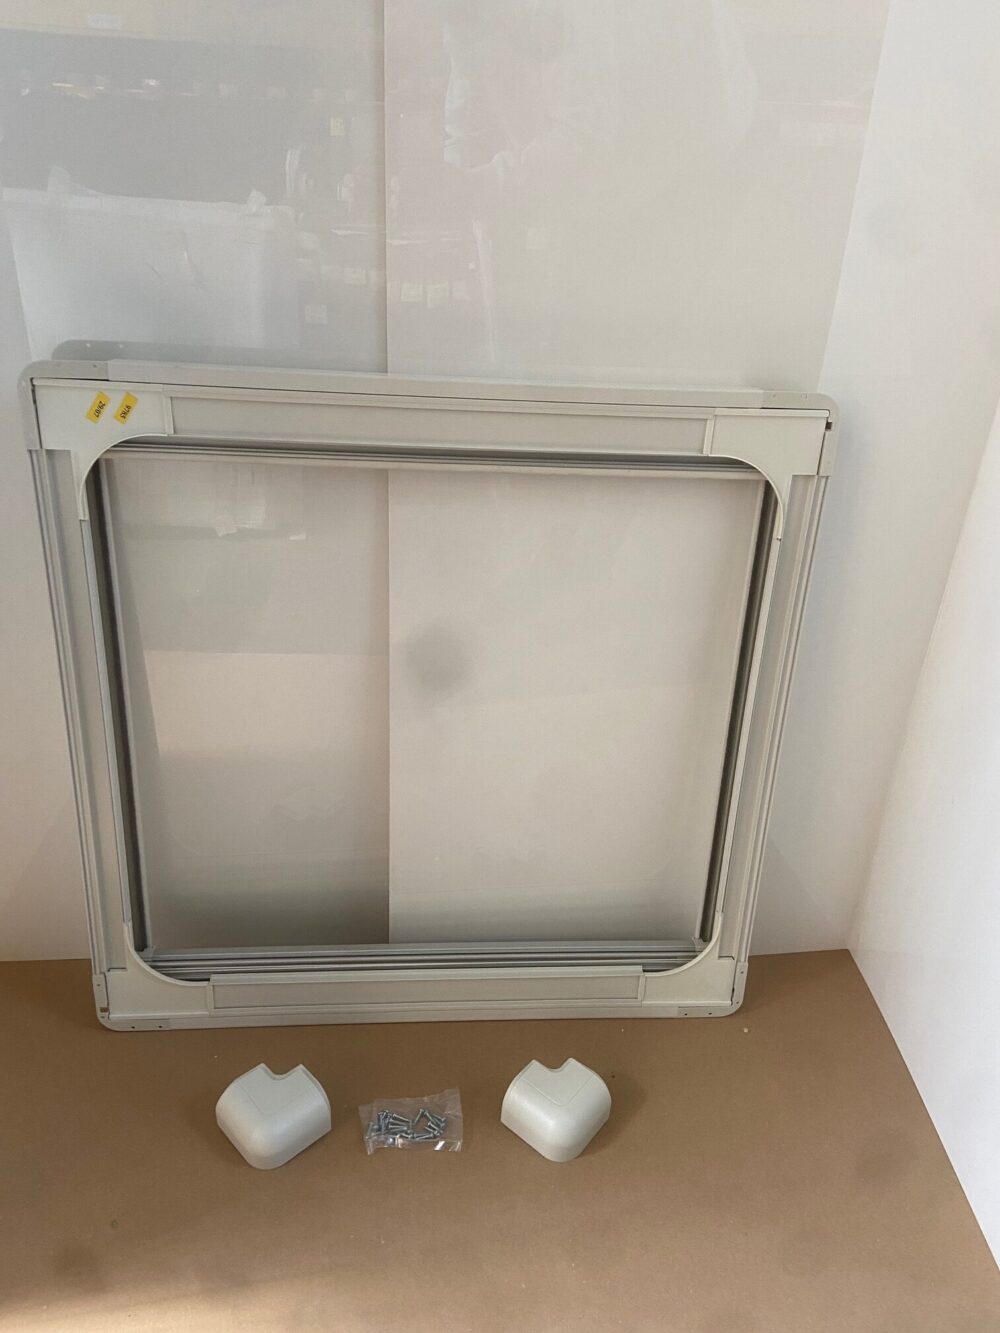 Doppelrollo Fliegenschutz und Verdunklung für Wohnmobilfenster, Remis,600 x 650 mm